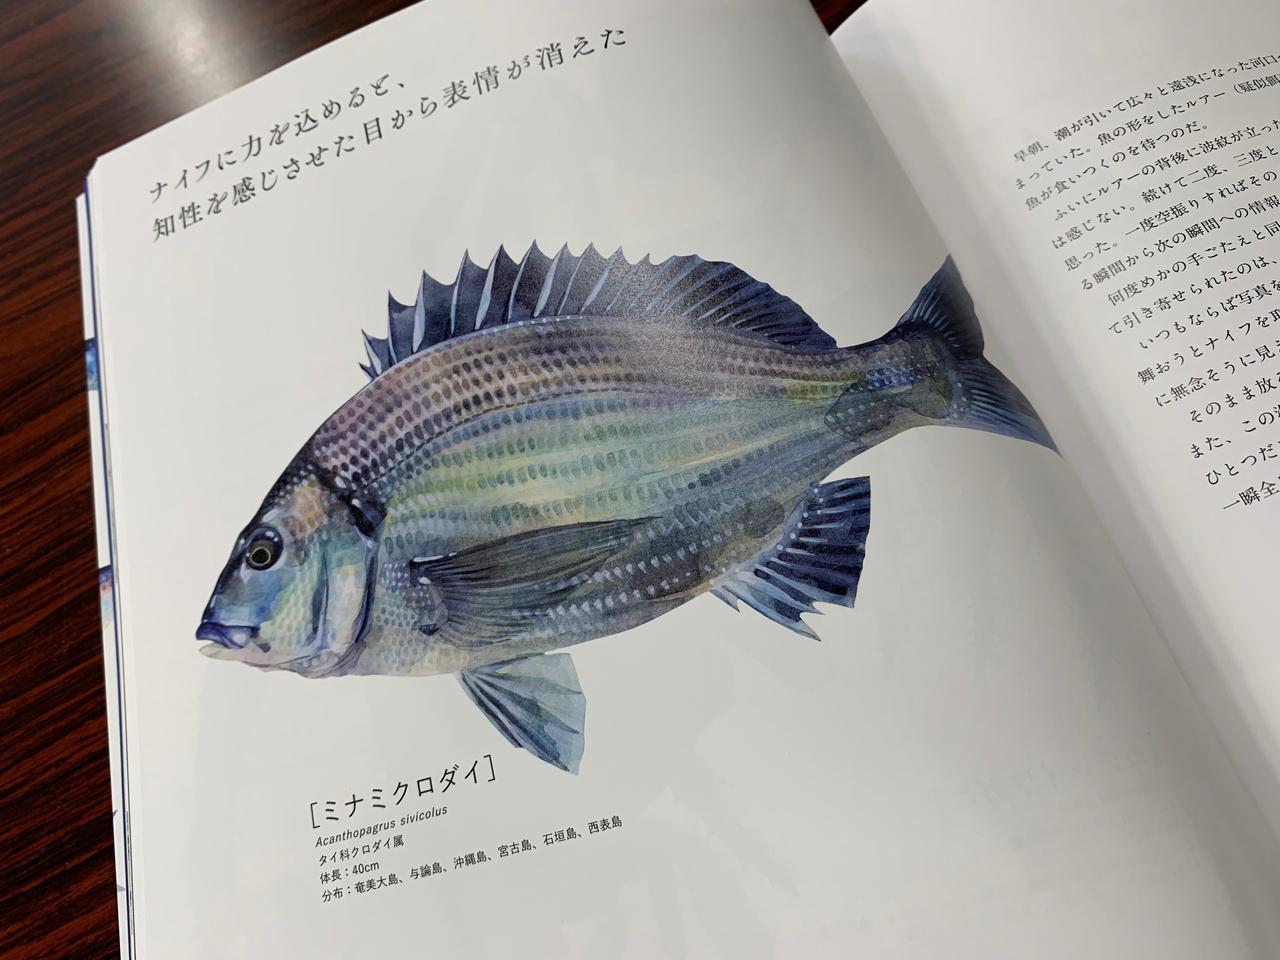 魚好きには堪らない素敵な図鑑が発刊 The Fish 魚と出会う図鑑 長嶋祐成 ルアマガ